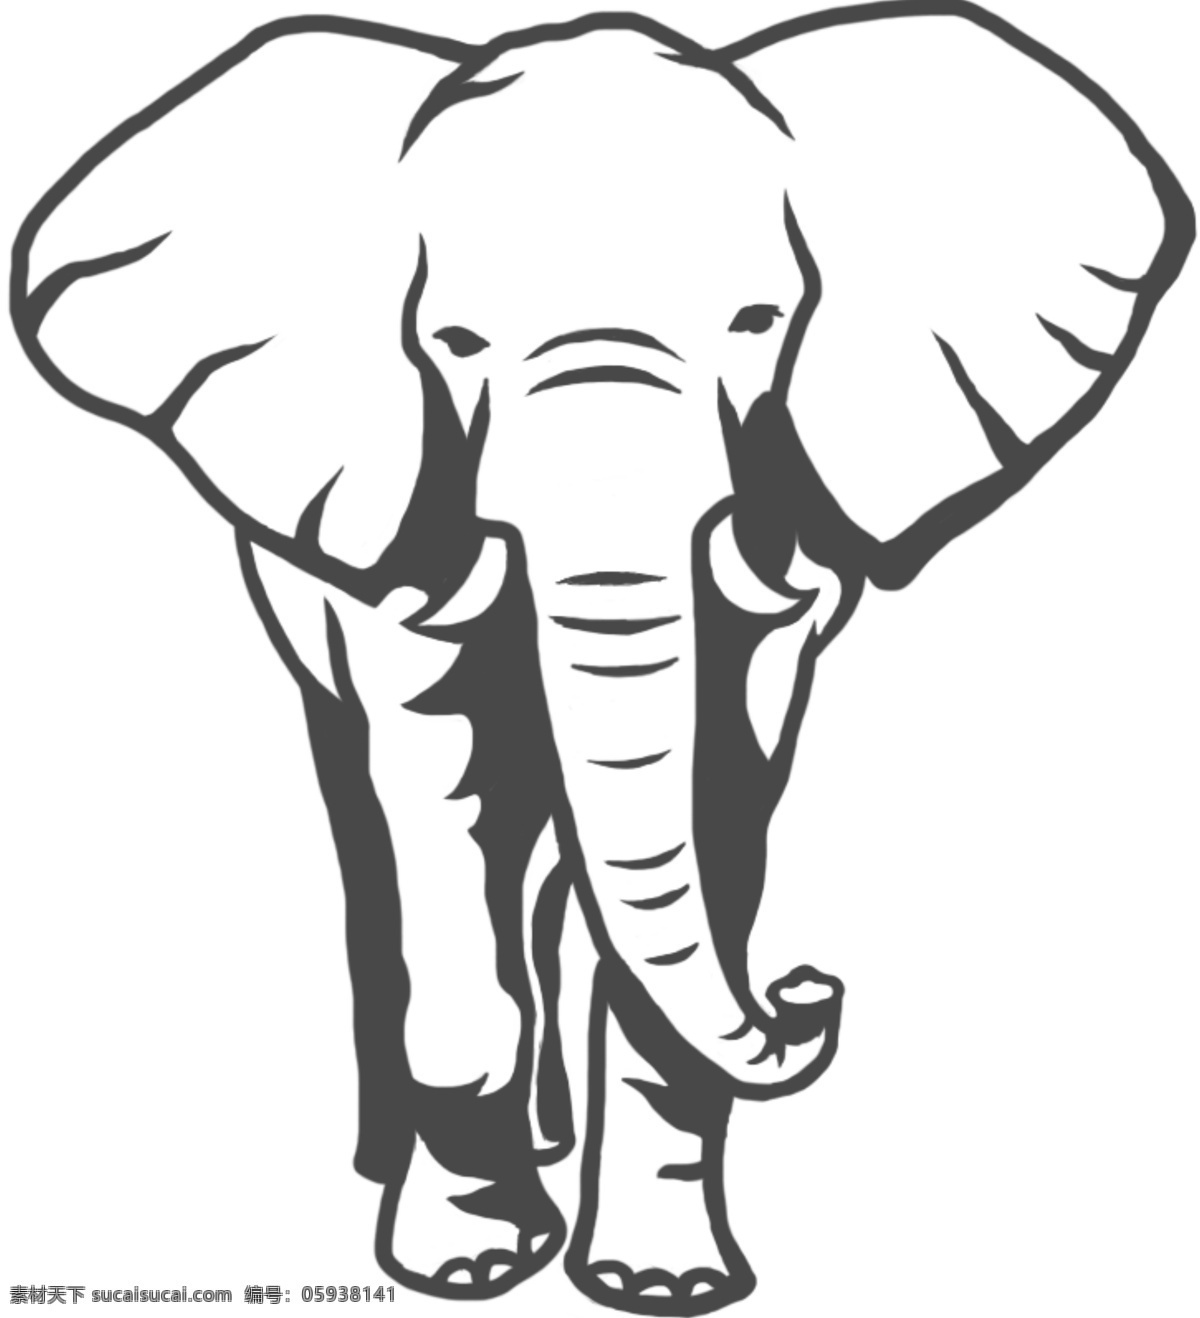 大象手绘插画 大象 logo 动物 黑白 简约